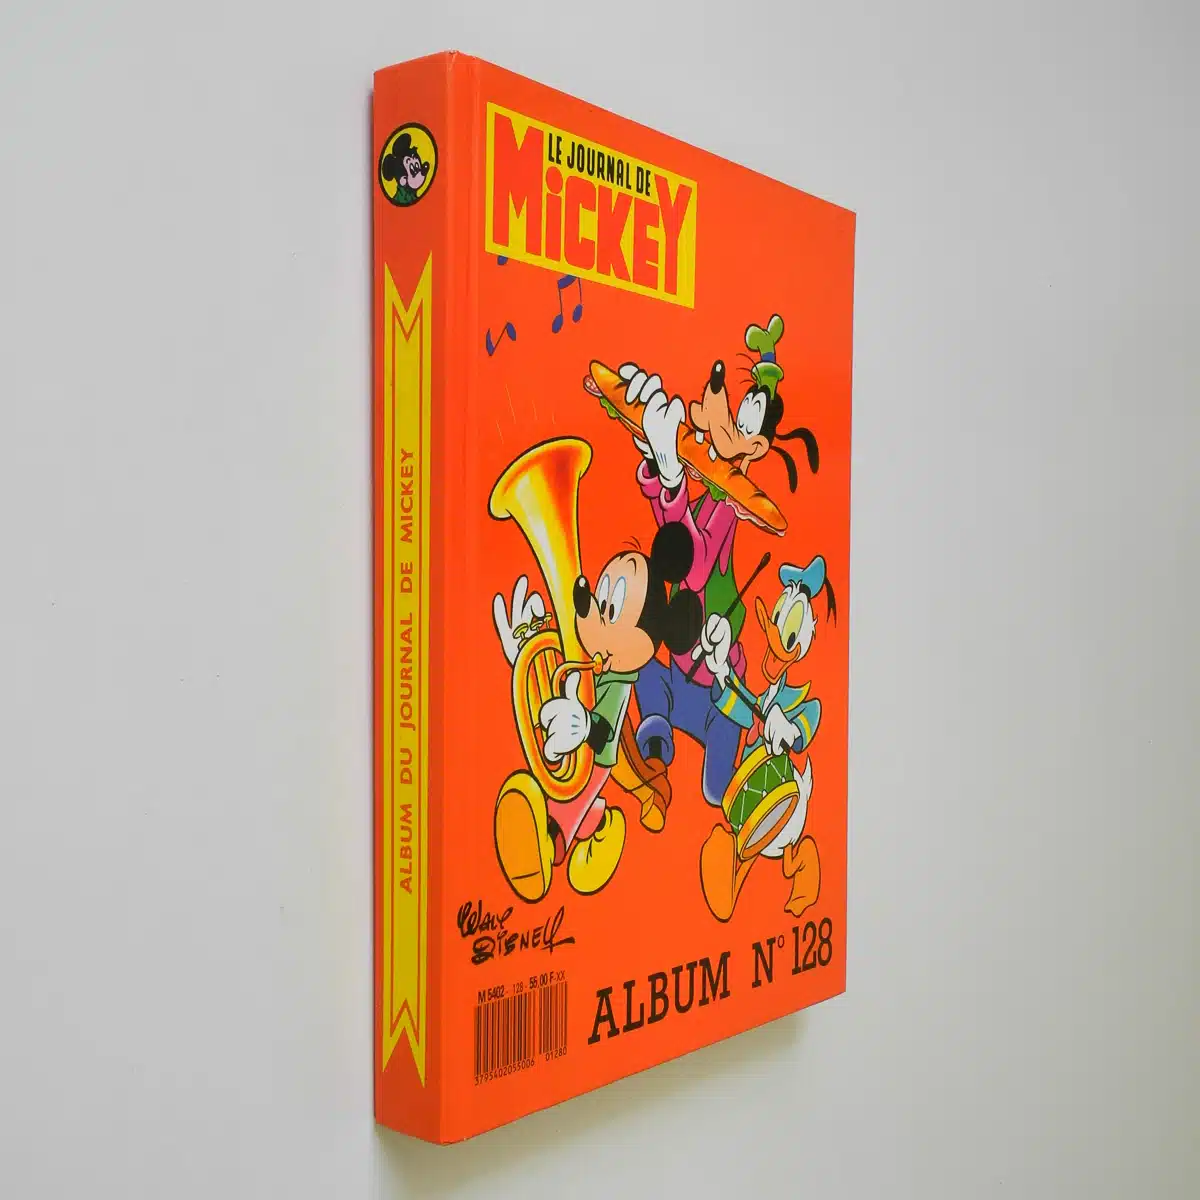 Le Journal de Mickey album n. 128 con gadget